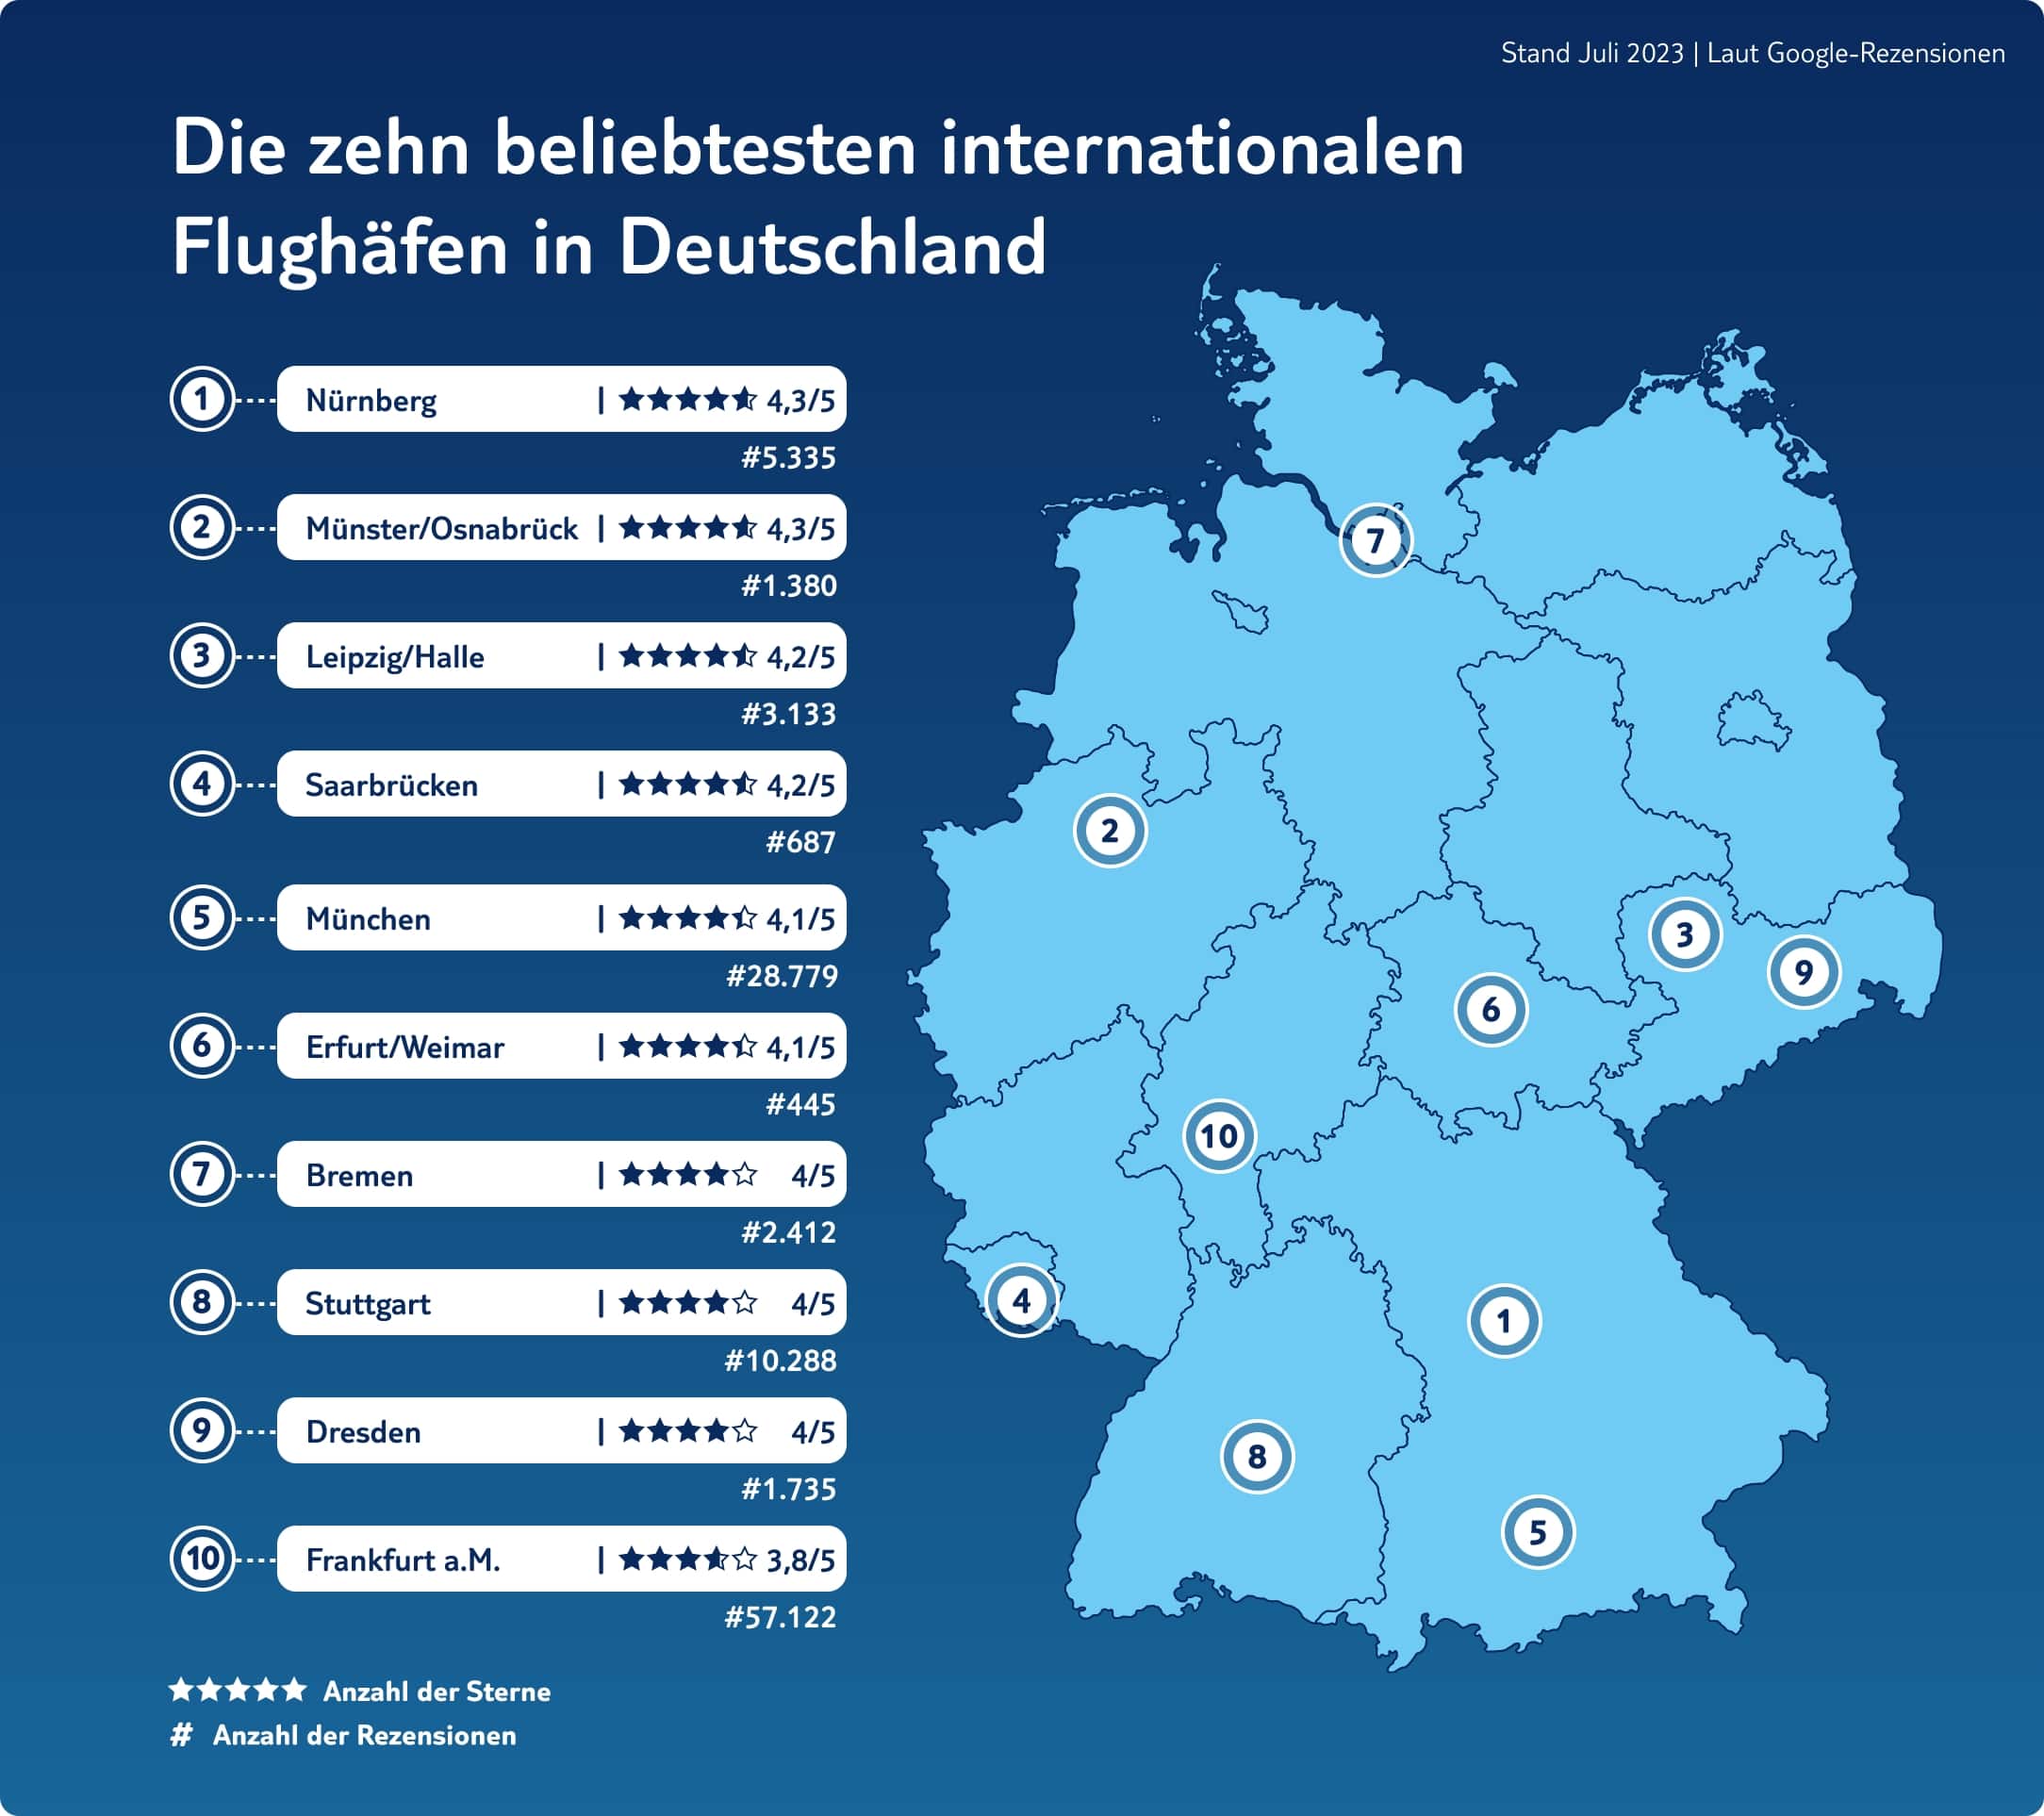 Die zehn beliebtesten internationalen flughaefen in Deutschland